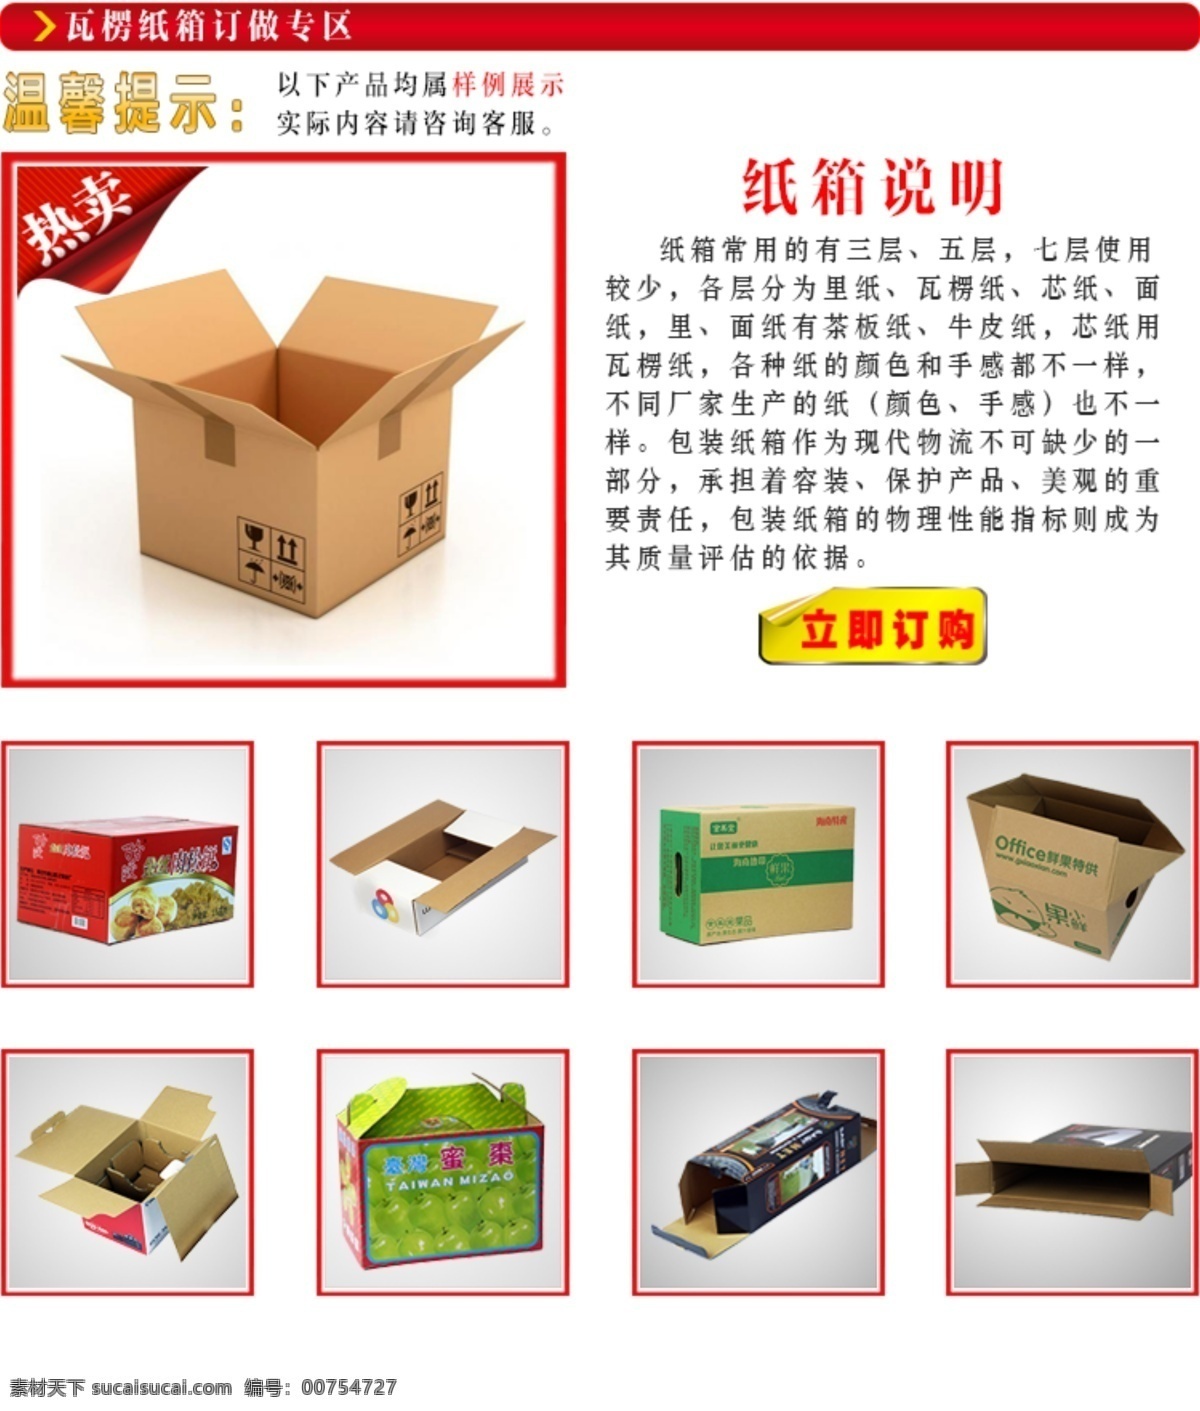 淘宝 宝贝 描述 阿里巴巴 纸箱 纸盒 包装盒 温馨提示语 水果盒 彩箱 食品箱 电子产品箱 纸箱说明